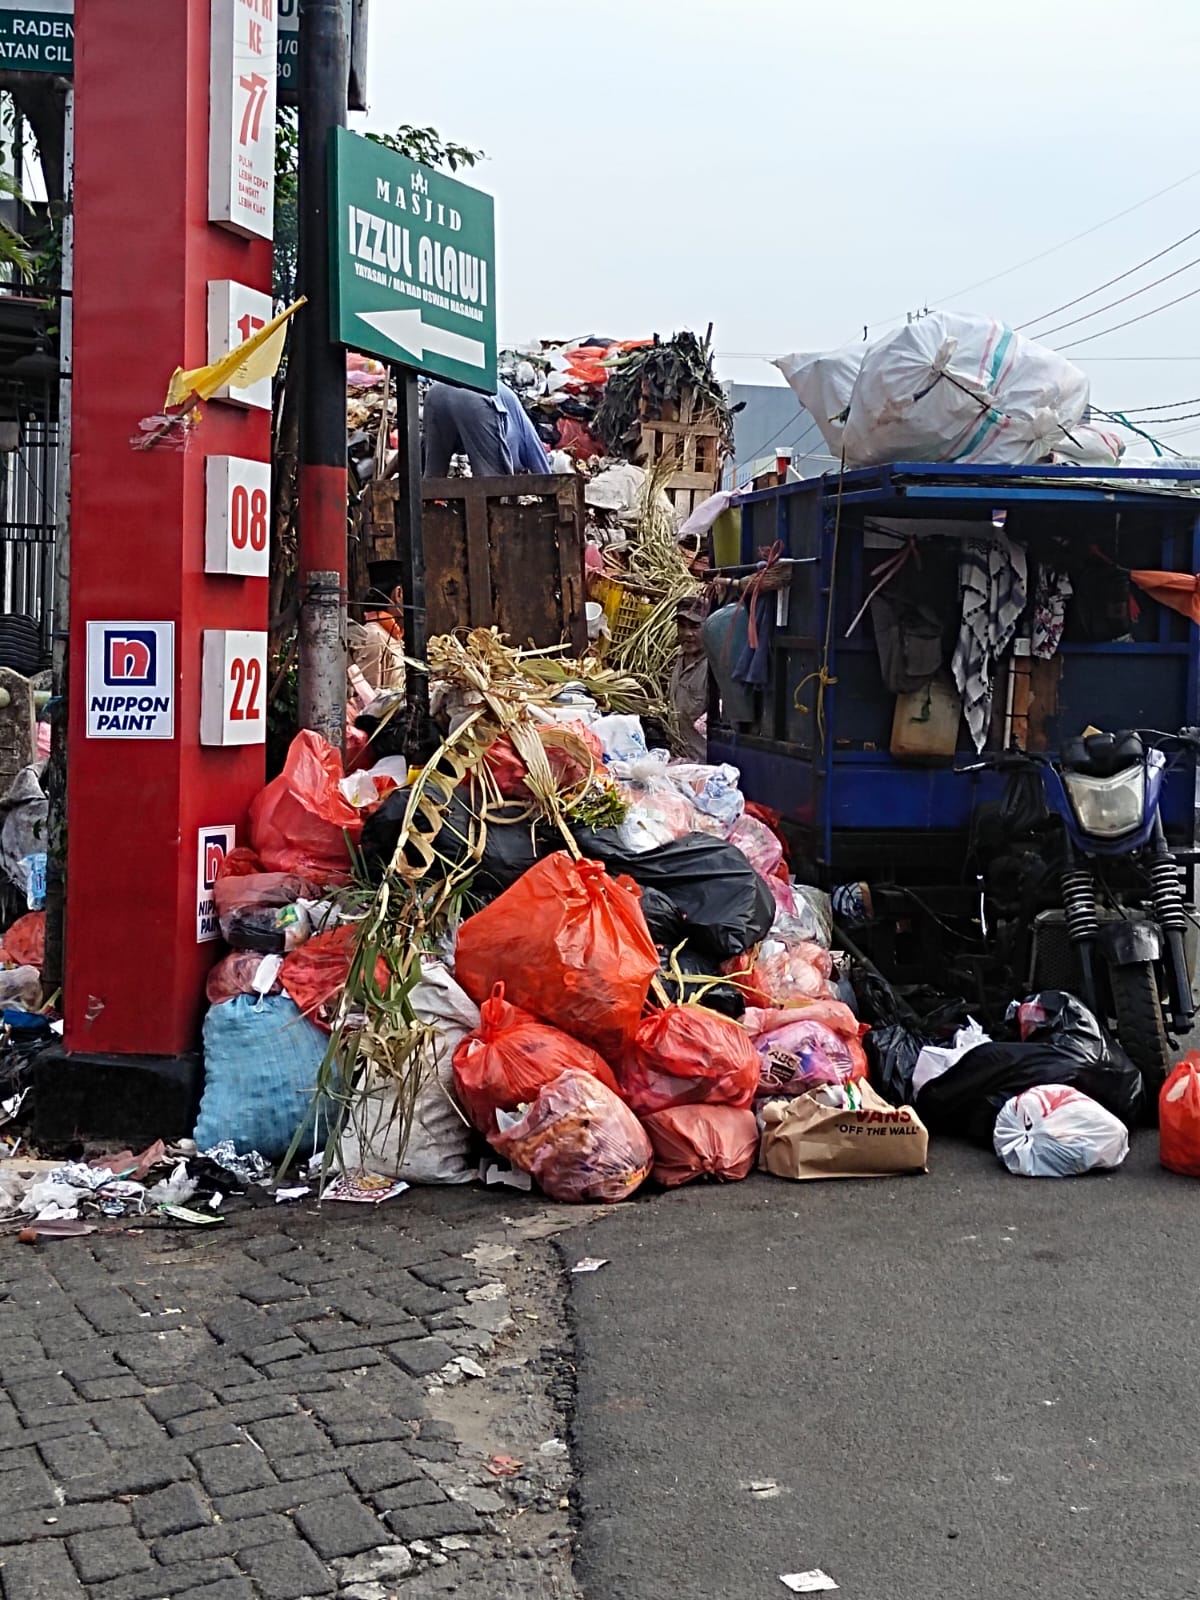 Monitoring pengangkatan Sampah Di jembatan Kp.Pulo oleh Dinas LH